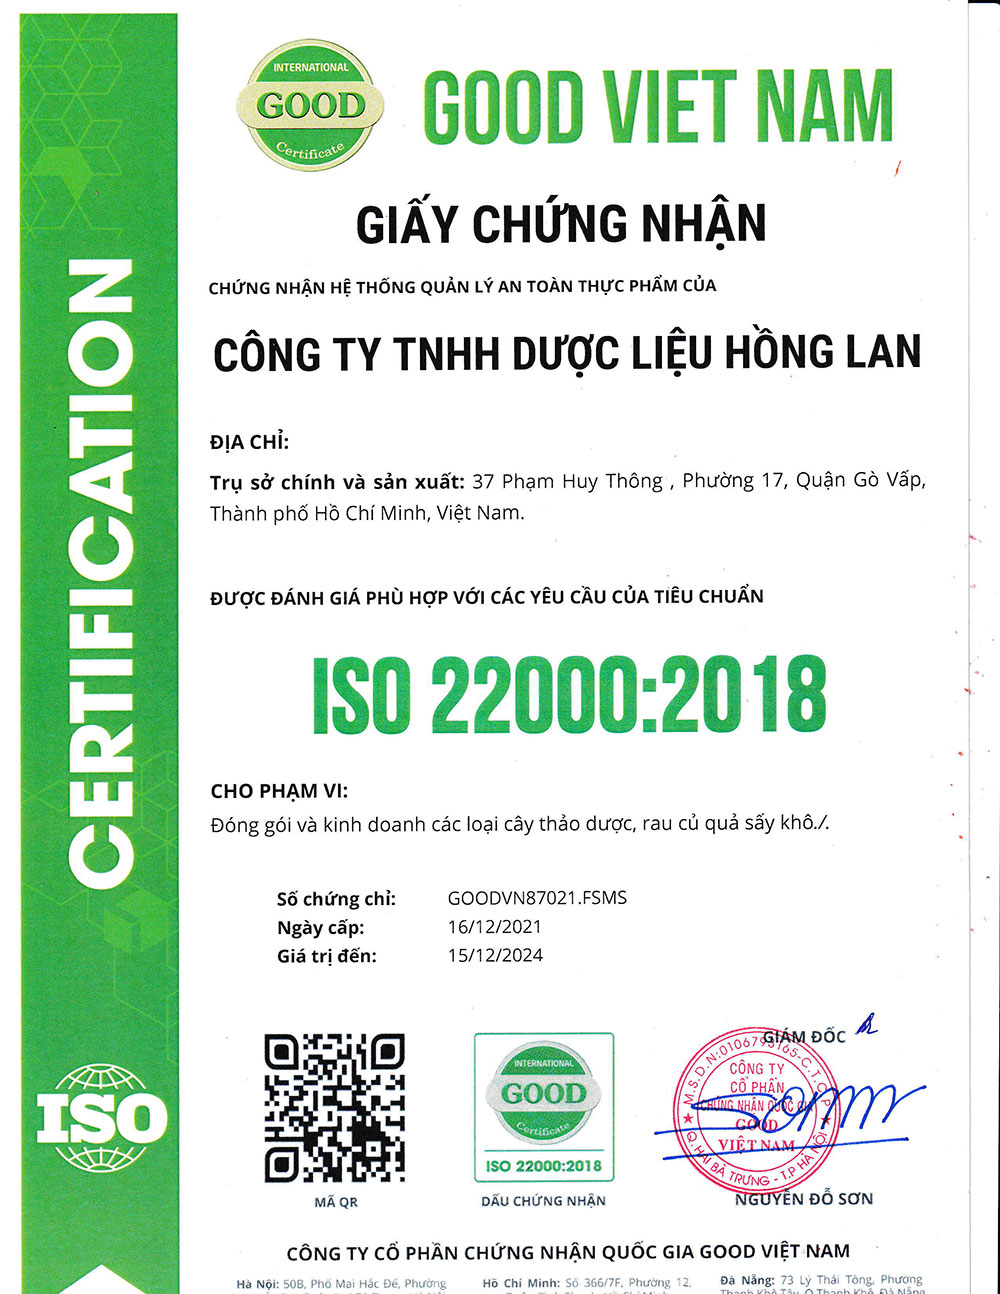 Trà Túi Lọc Hỗ Trợ Bổ Thận dạng túi lọc được sản xuất theo hệ thống quản lý an toàn thực phẩm ISO 22000:2018 được cấp bởi công ty cổ phần chứng nhận Quốc Gia Good Việt Nam (Good Viet Nam Certification Joint Stock Company)